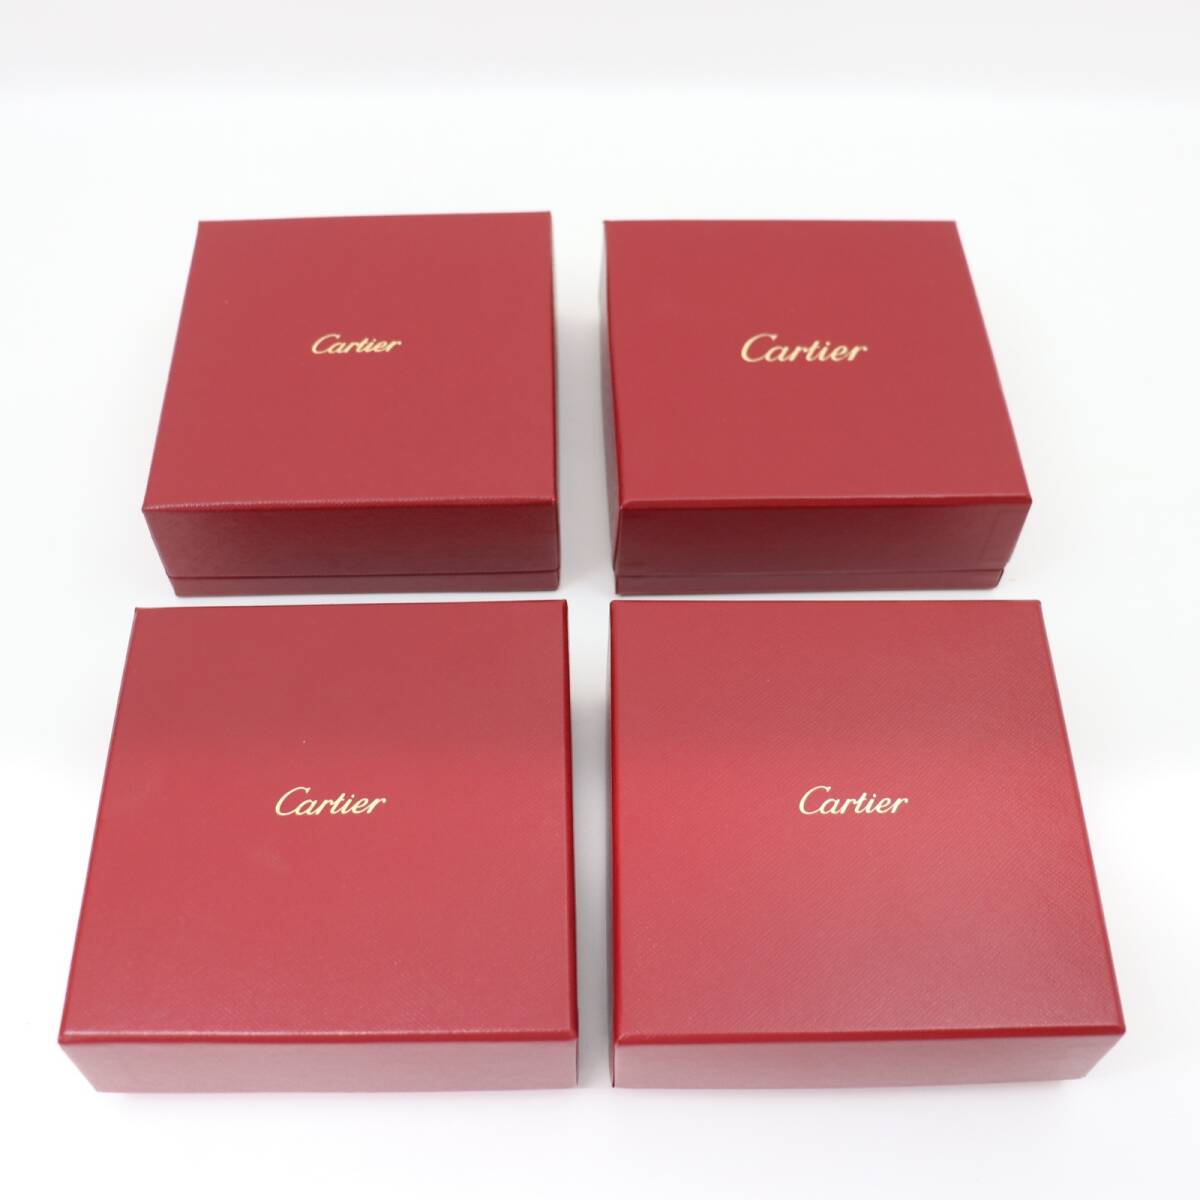 ITNS3DHLLEQO быстрое решение подлинный товар Cartier Cartier jue Reebok s аксессуары колье для BOX кейс пустой коробка принадлежности хранение 4 пункт 